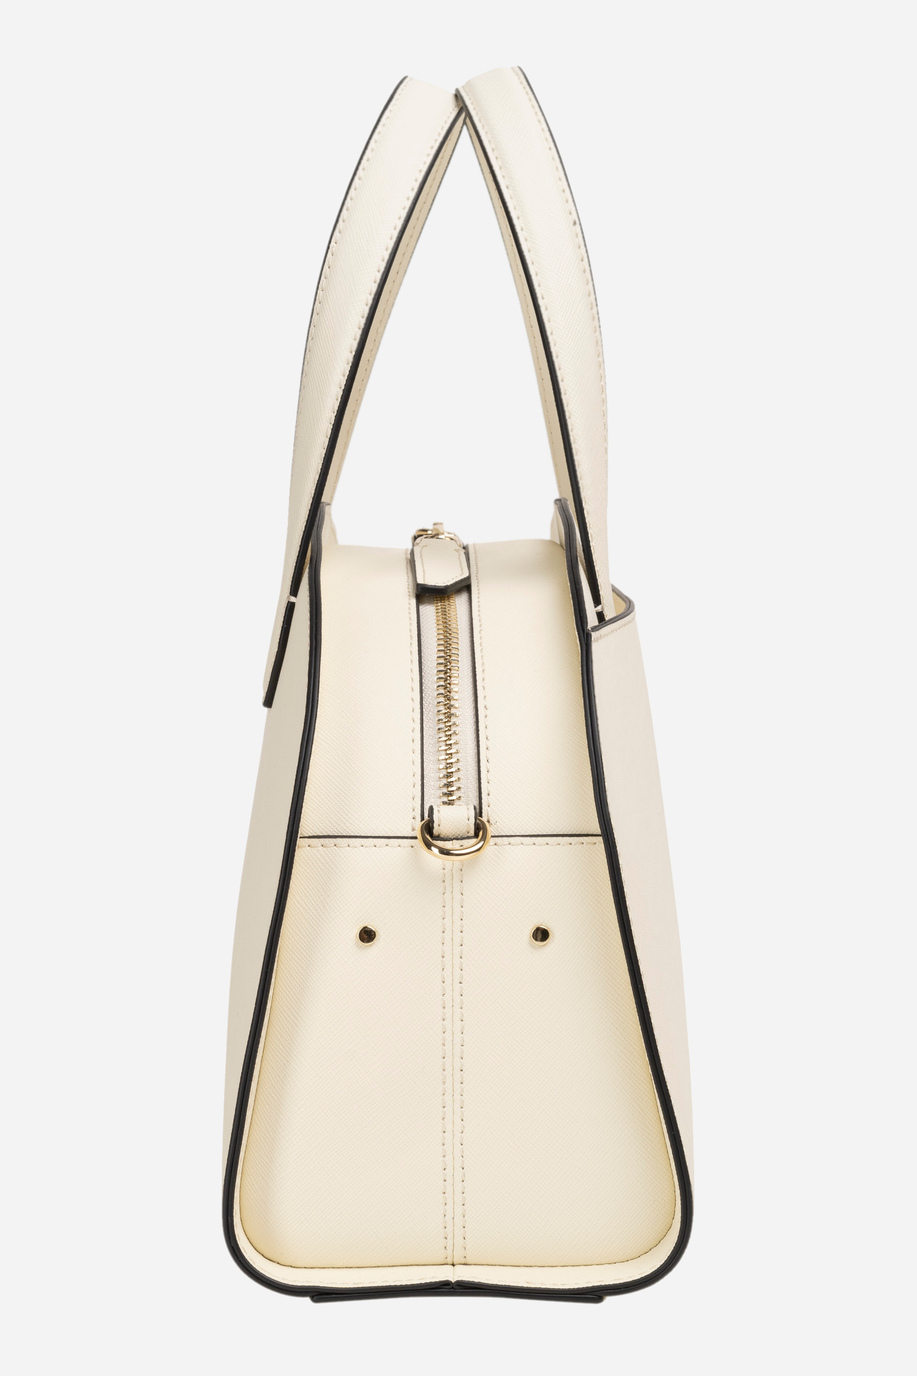 Leather handbag - Karina - Accessories Woman | La Martina - Official Online Shop